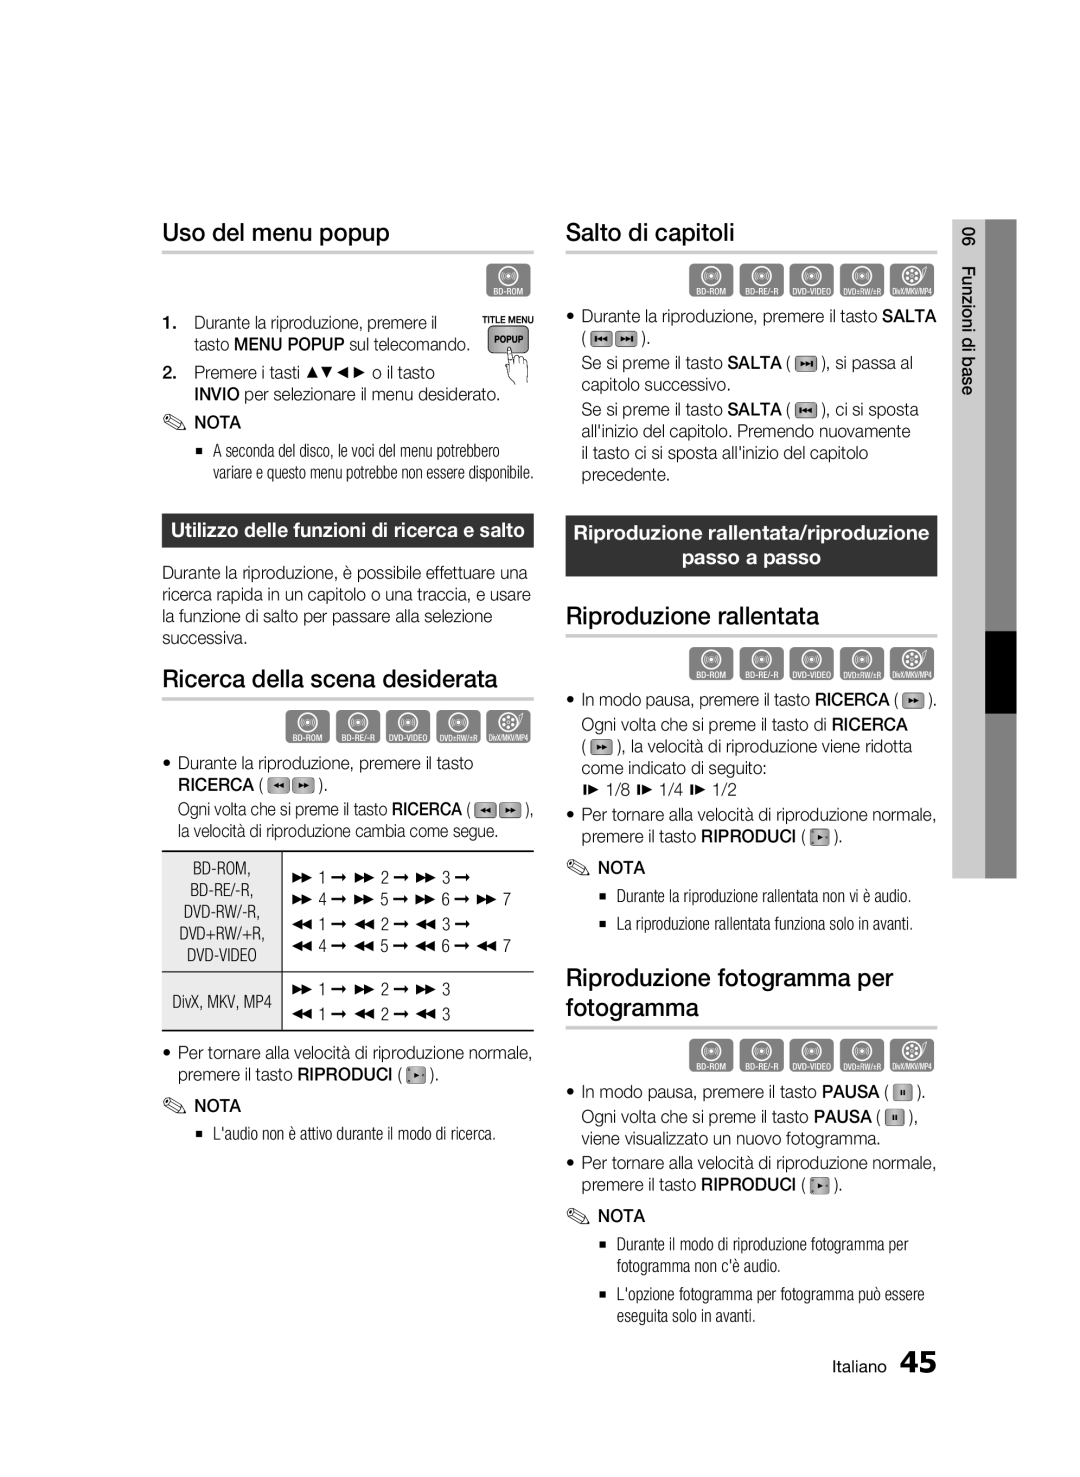 Samsung BD-C7500/EDC manual Uso del menu popup, Salto di capitoli, Ricerca della scena desiderata, Riproduzione rallentata 